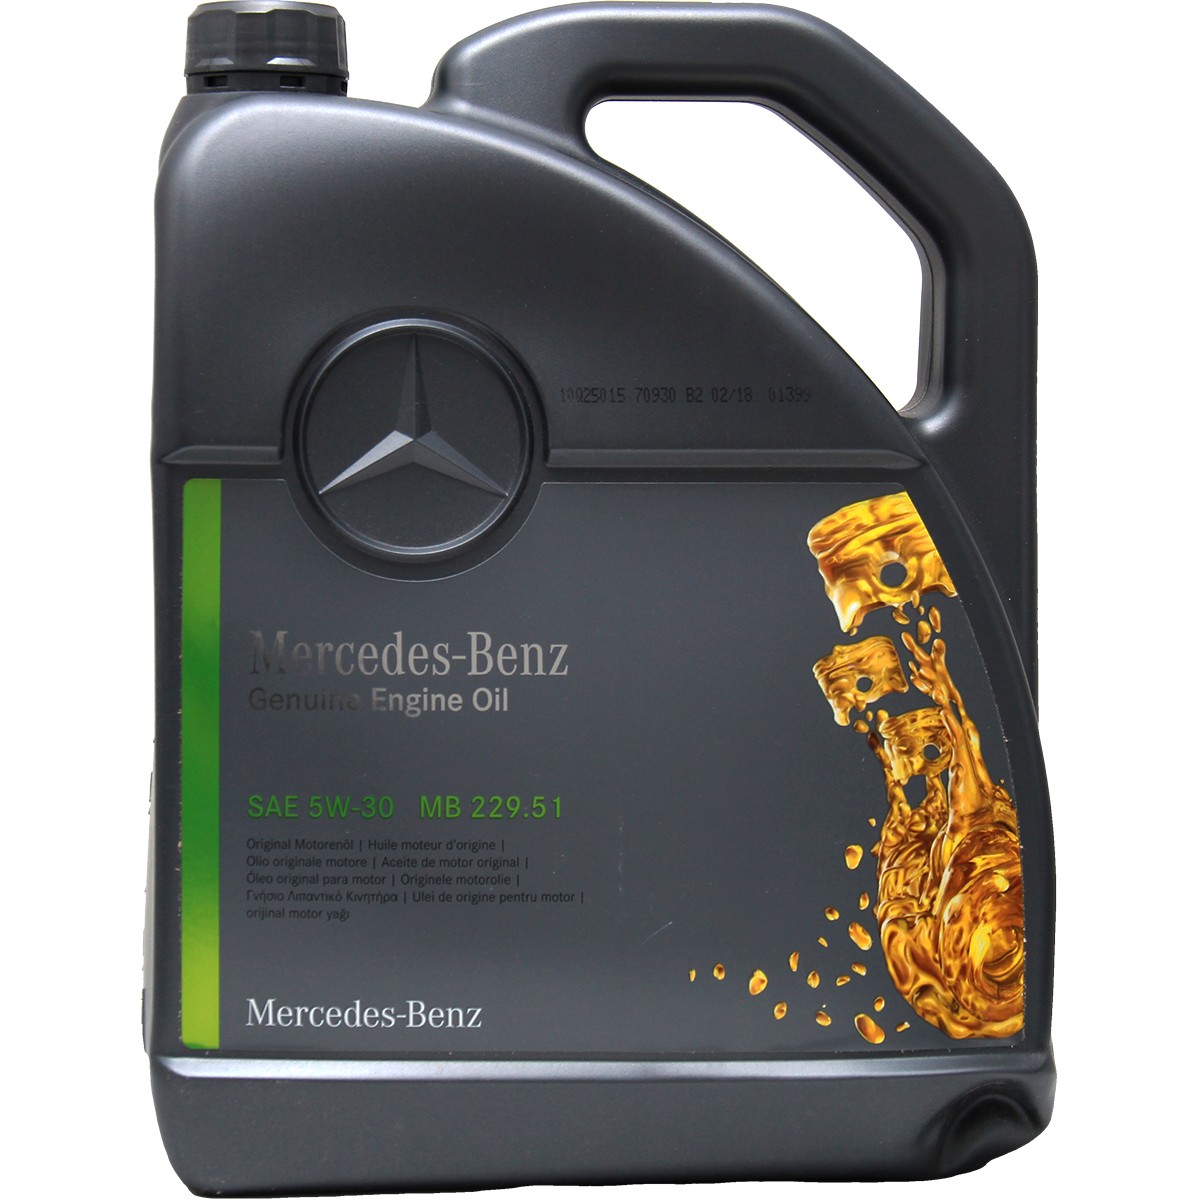 Acquisto Olio motore Mercedes-Benz A000989940213ALEE Genuine Engine Oil 5W-30, 5l